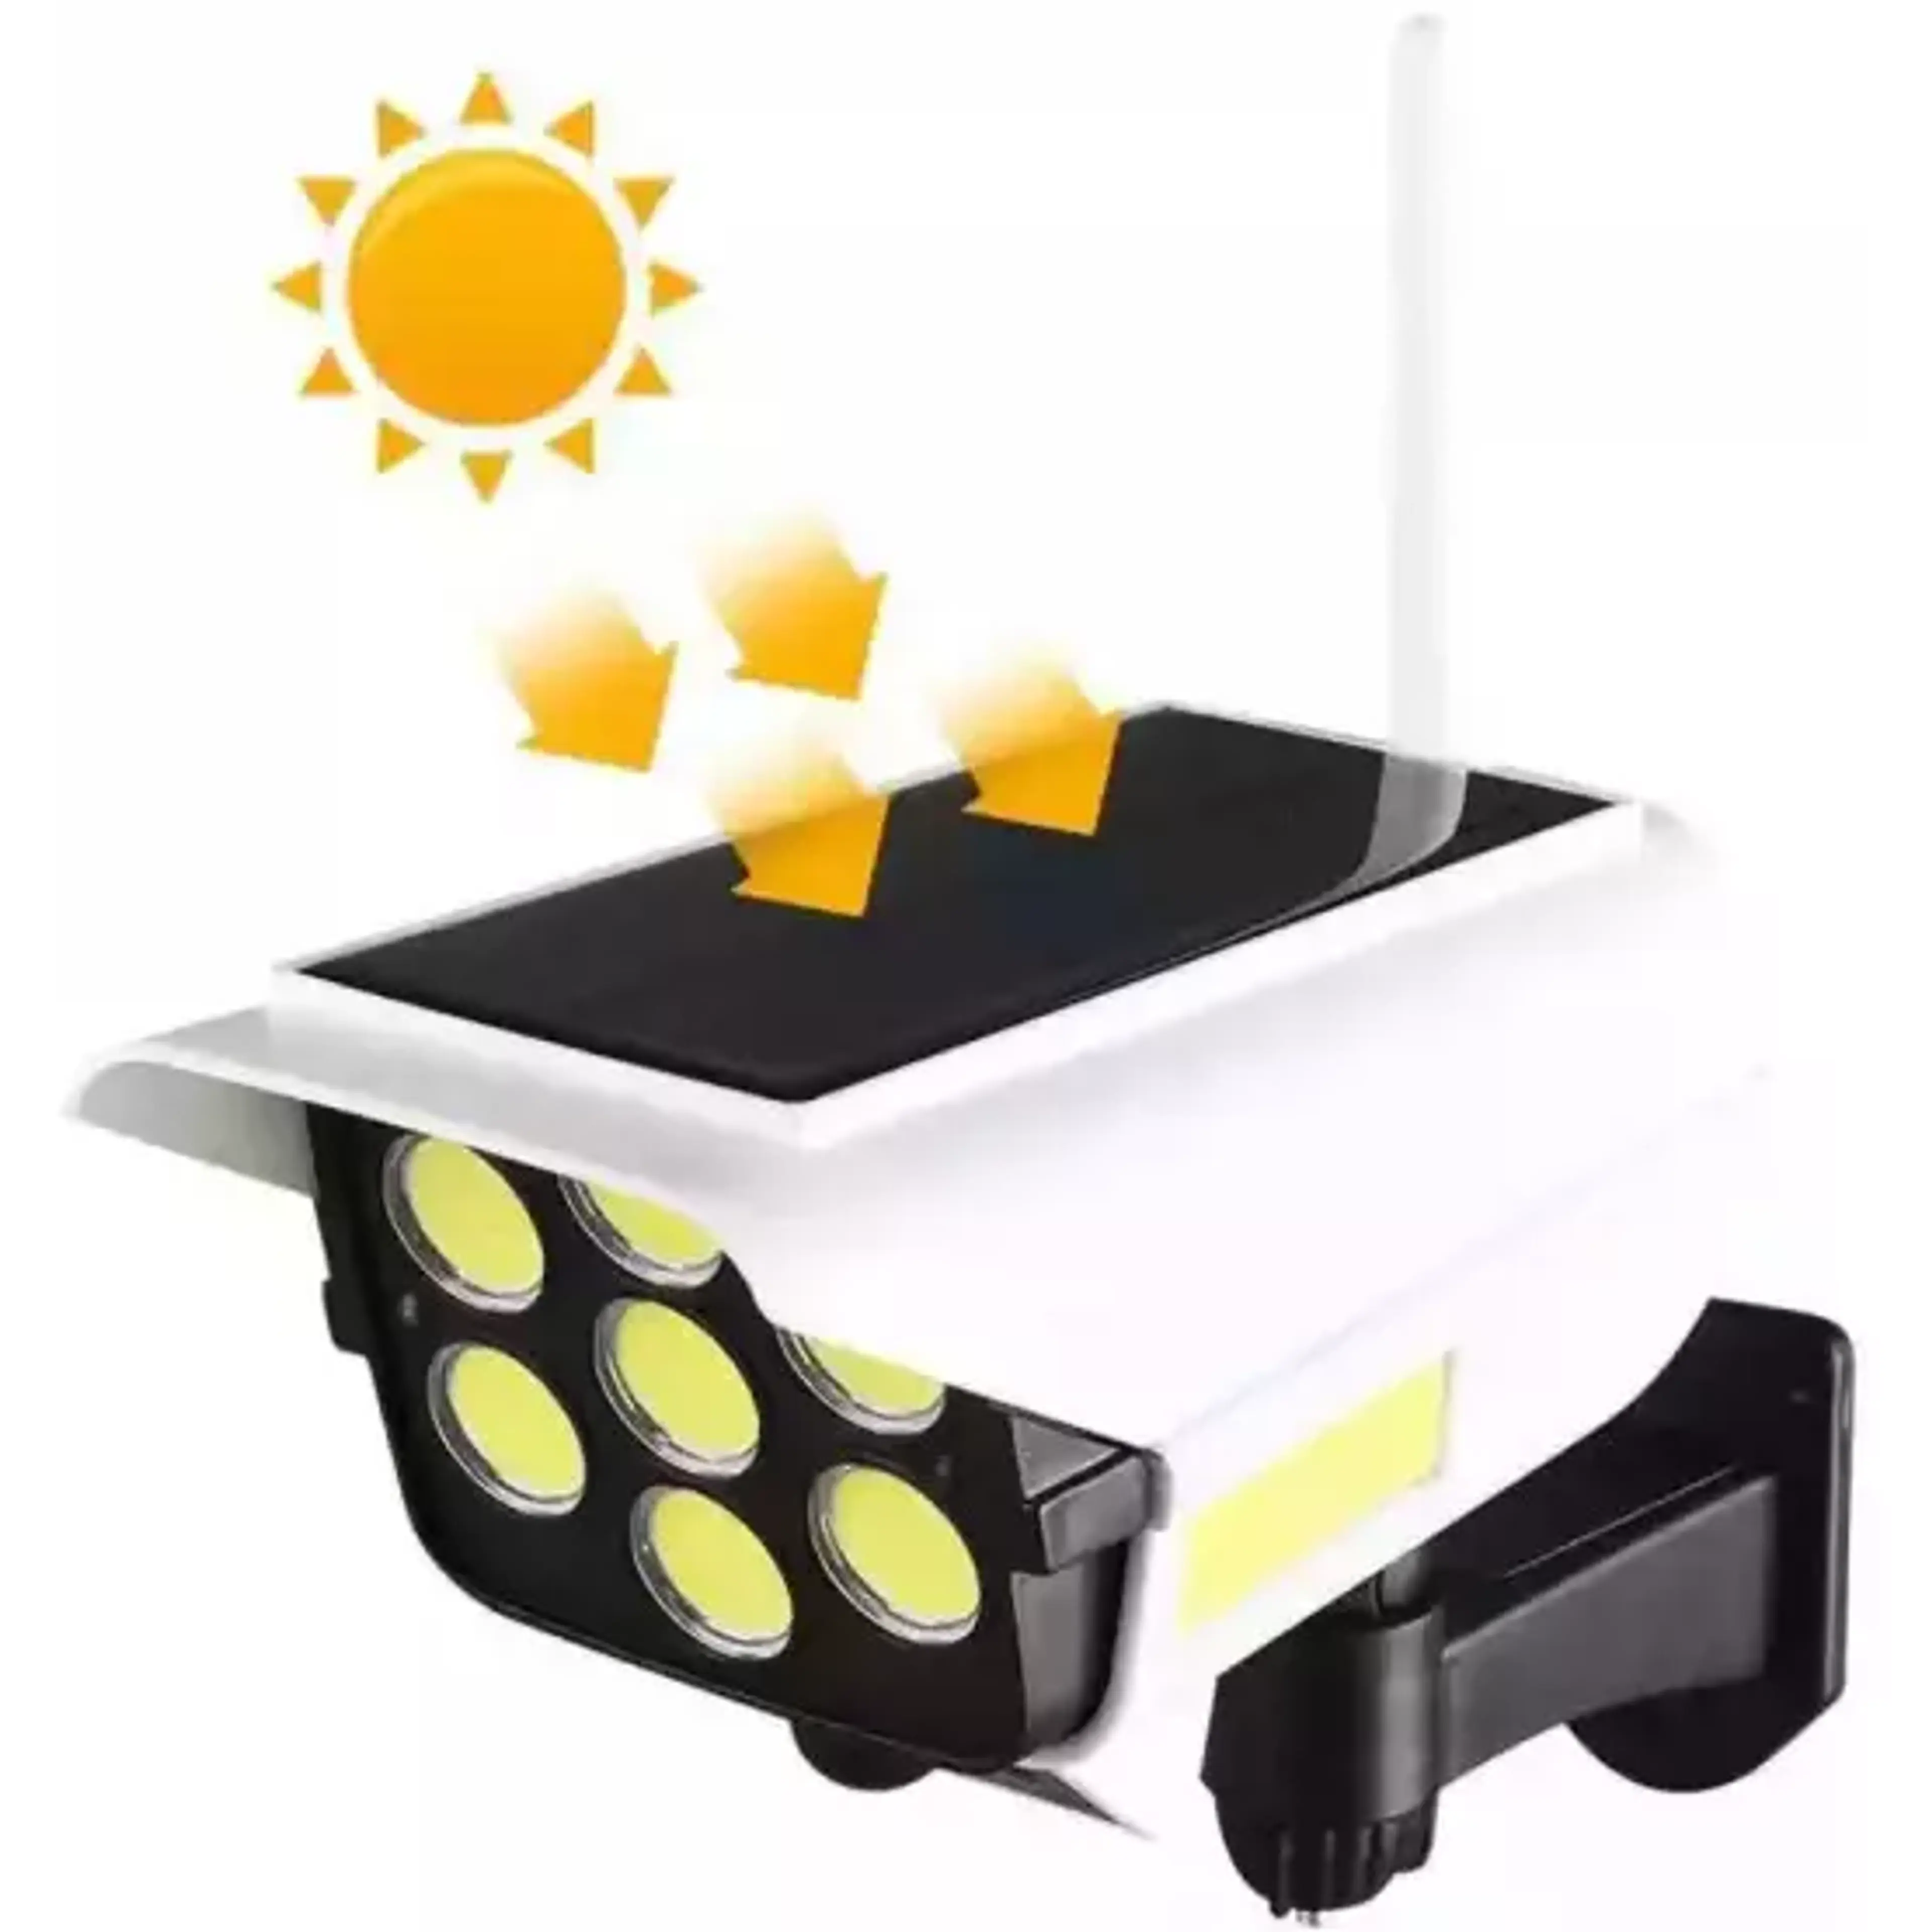 Соларна лампа - Имитация на охранителна камера, 150 W, 63 COB, със сензор за движеи и дистанционно